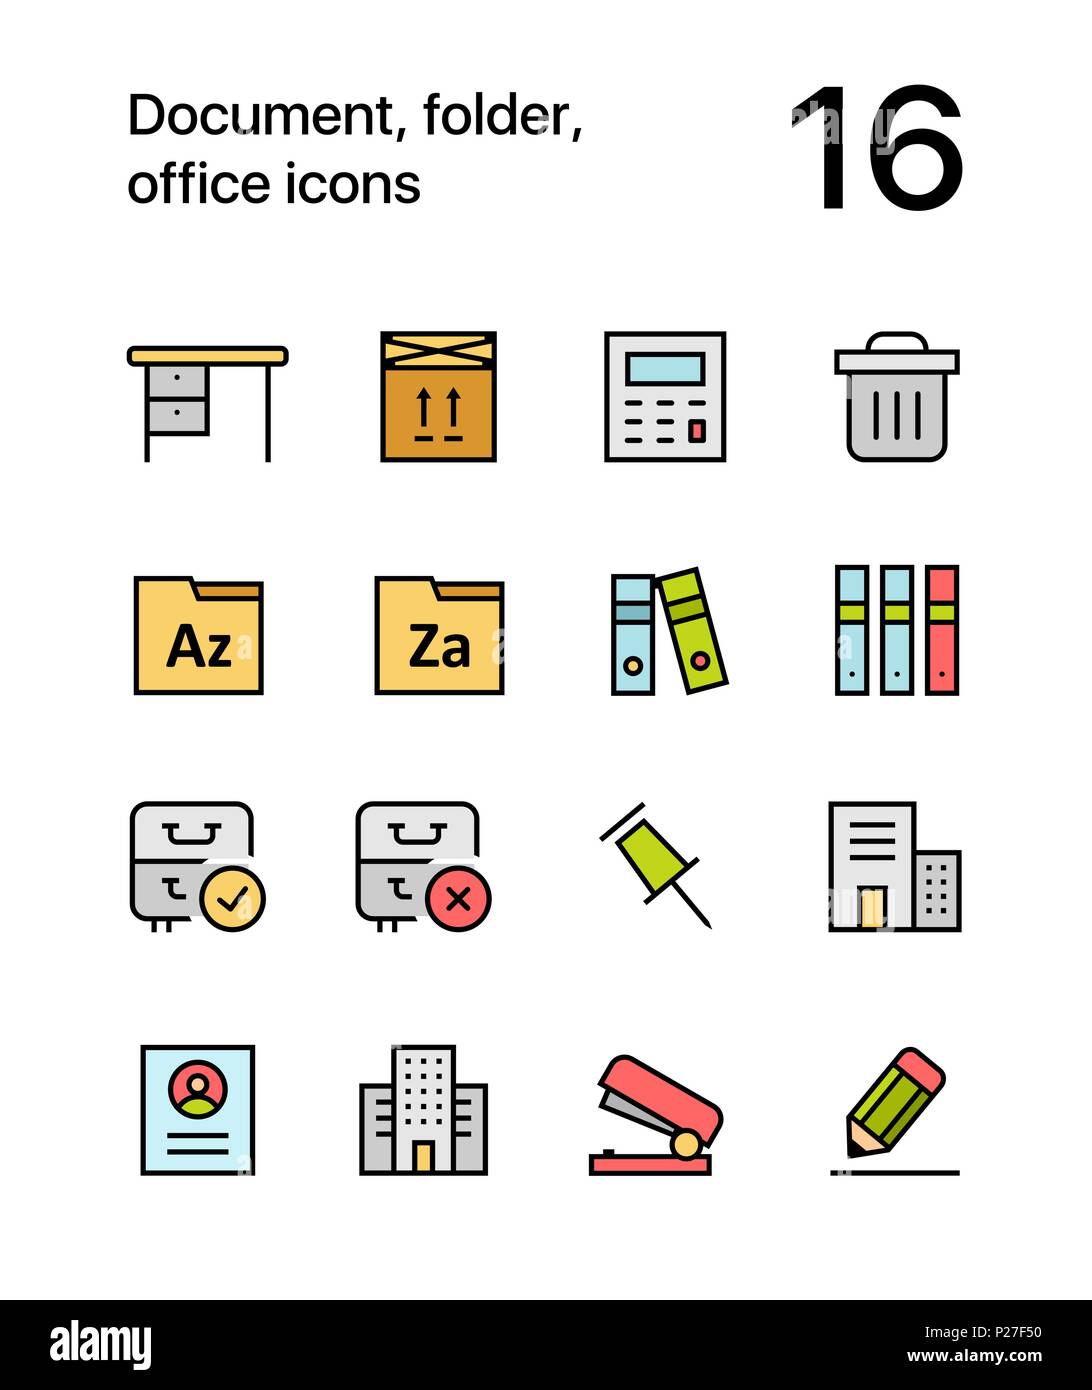 Les documents couleur, dossier, icônes de bureau pour le web et les terminaux mobiles pack 3 Illustration de Vecteur